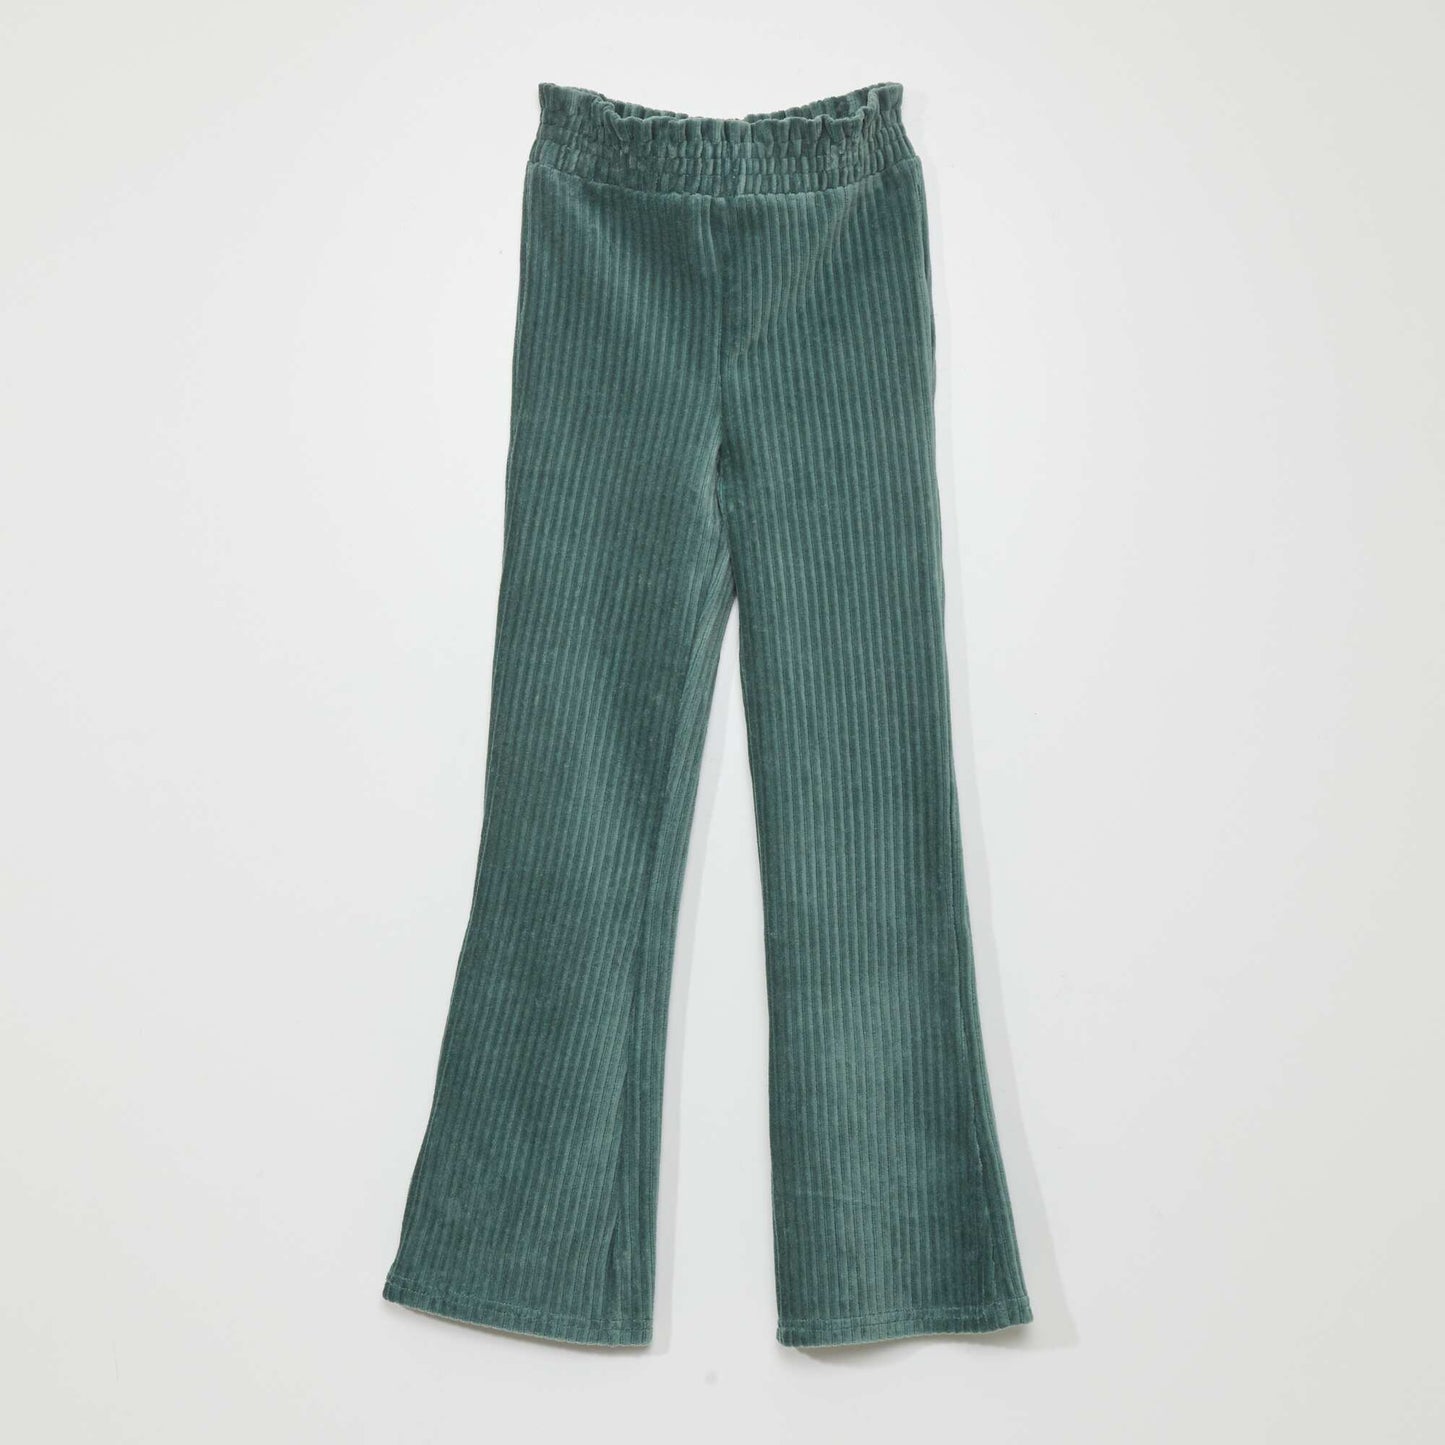 Pantalon en maille velours côtelée Vert